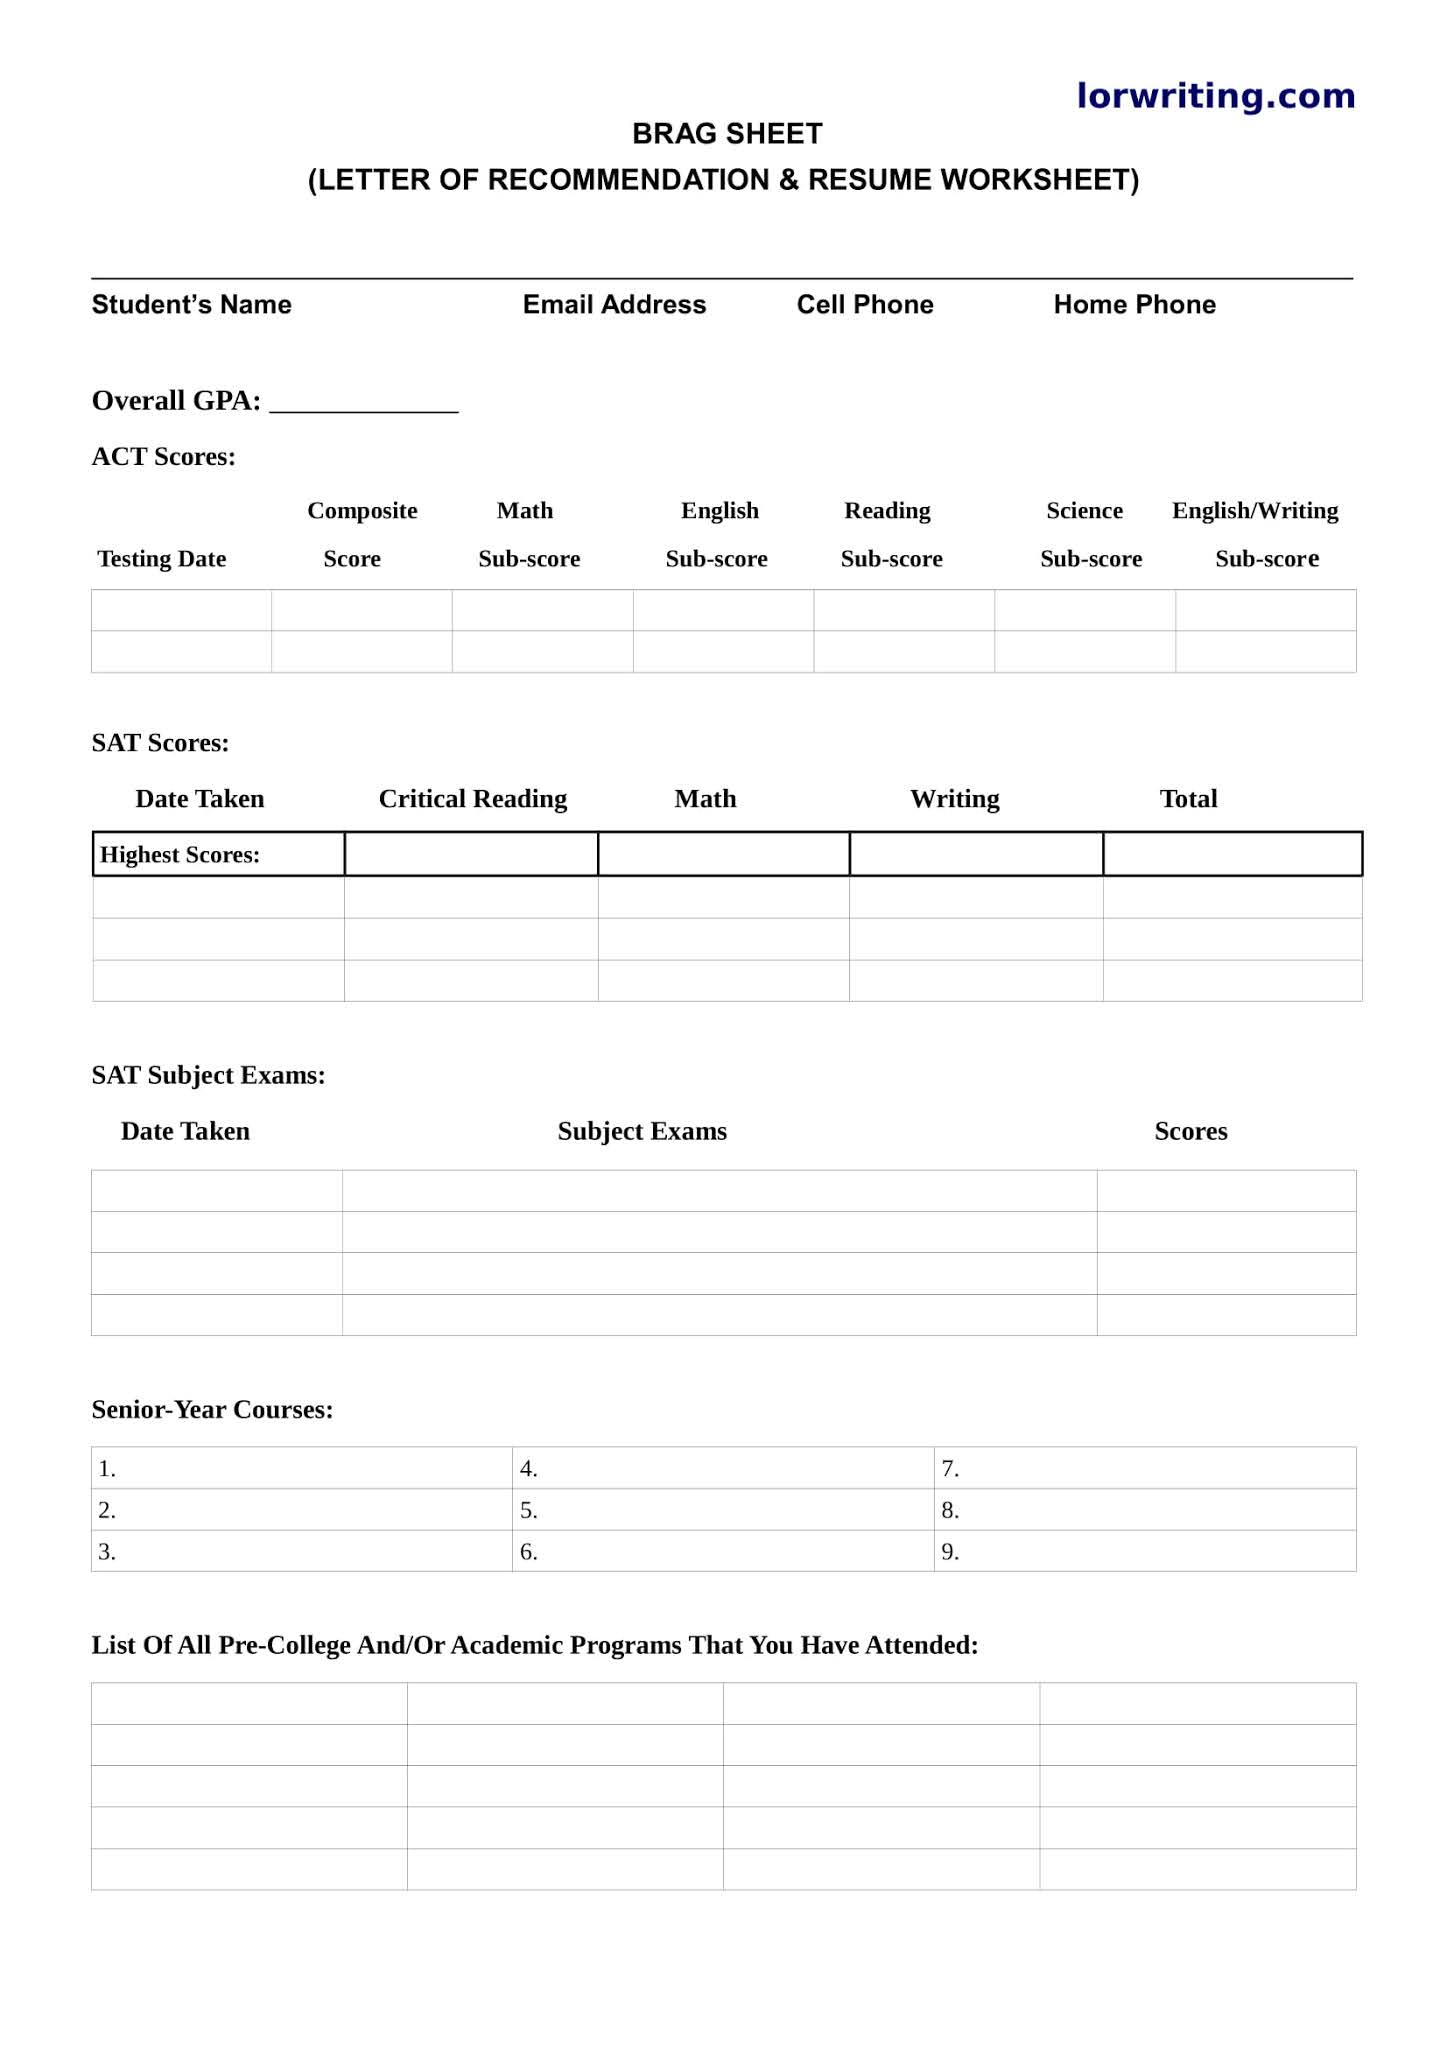 brag-sheet-template-for-letter-of-recommendation-resume-letter